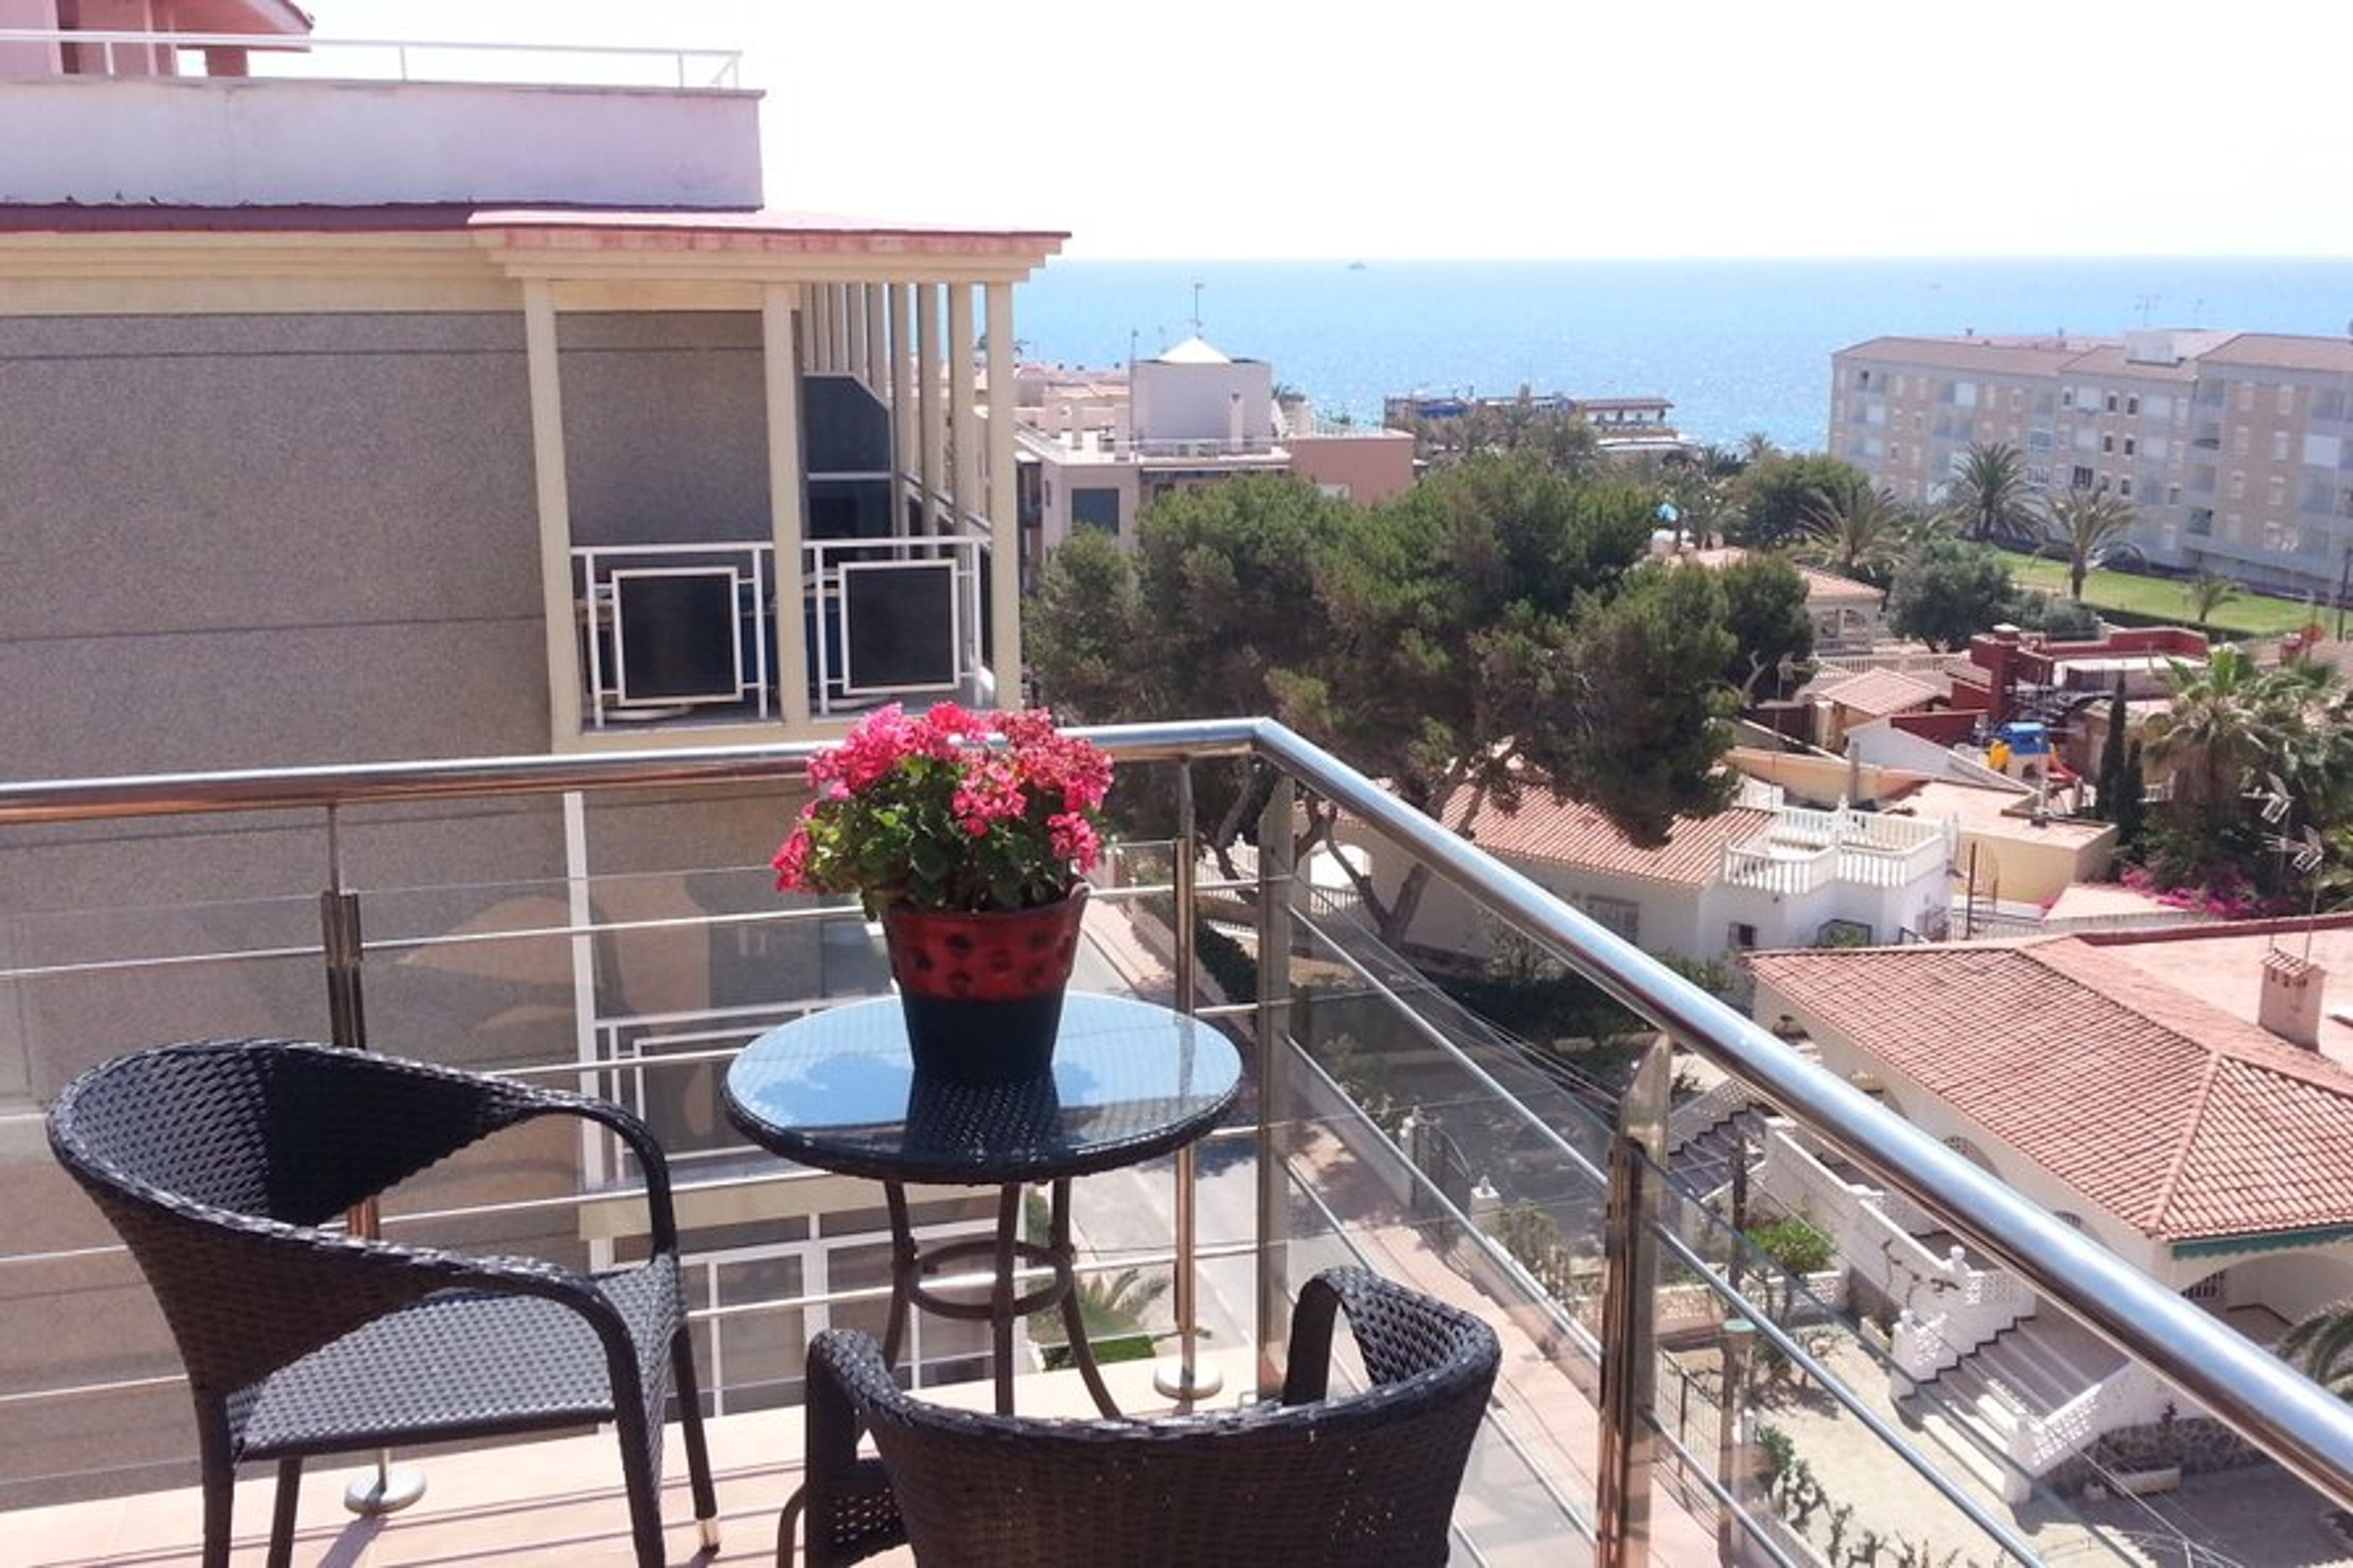 Large wraparound balcony with sea views.